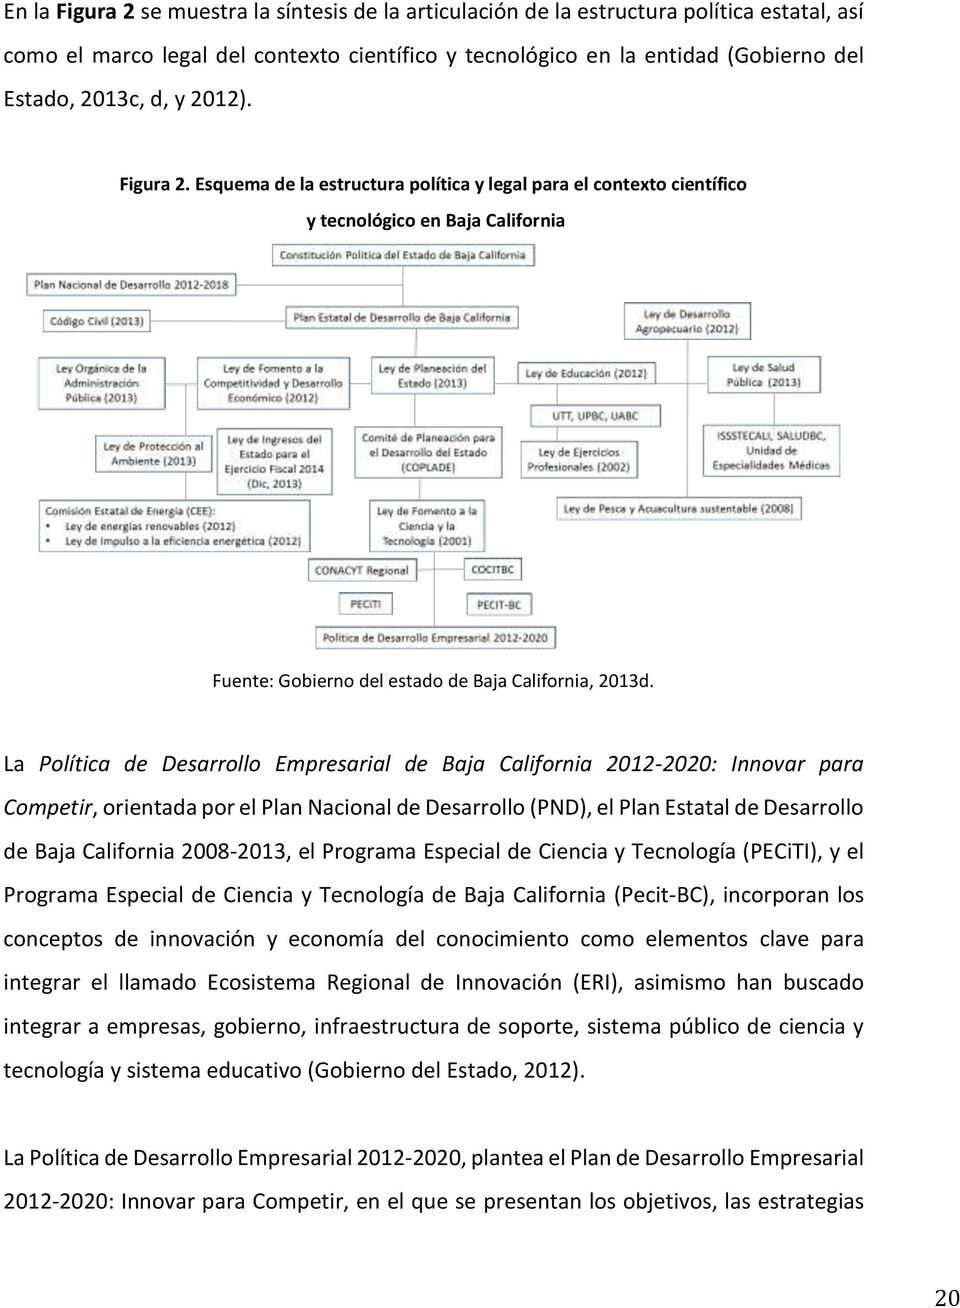 La Política de Desarrollo Empresarial de Baja California 2012-2020: Innovar para Competir, orientada por el Plan Nacional de Desarrollo (PND), el Plan Estatal de Desarrollo de Baja California